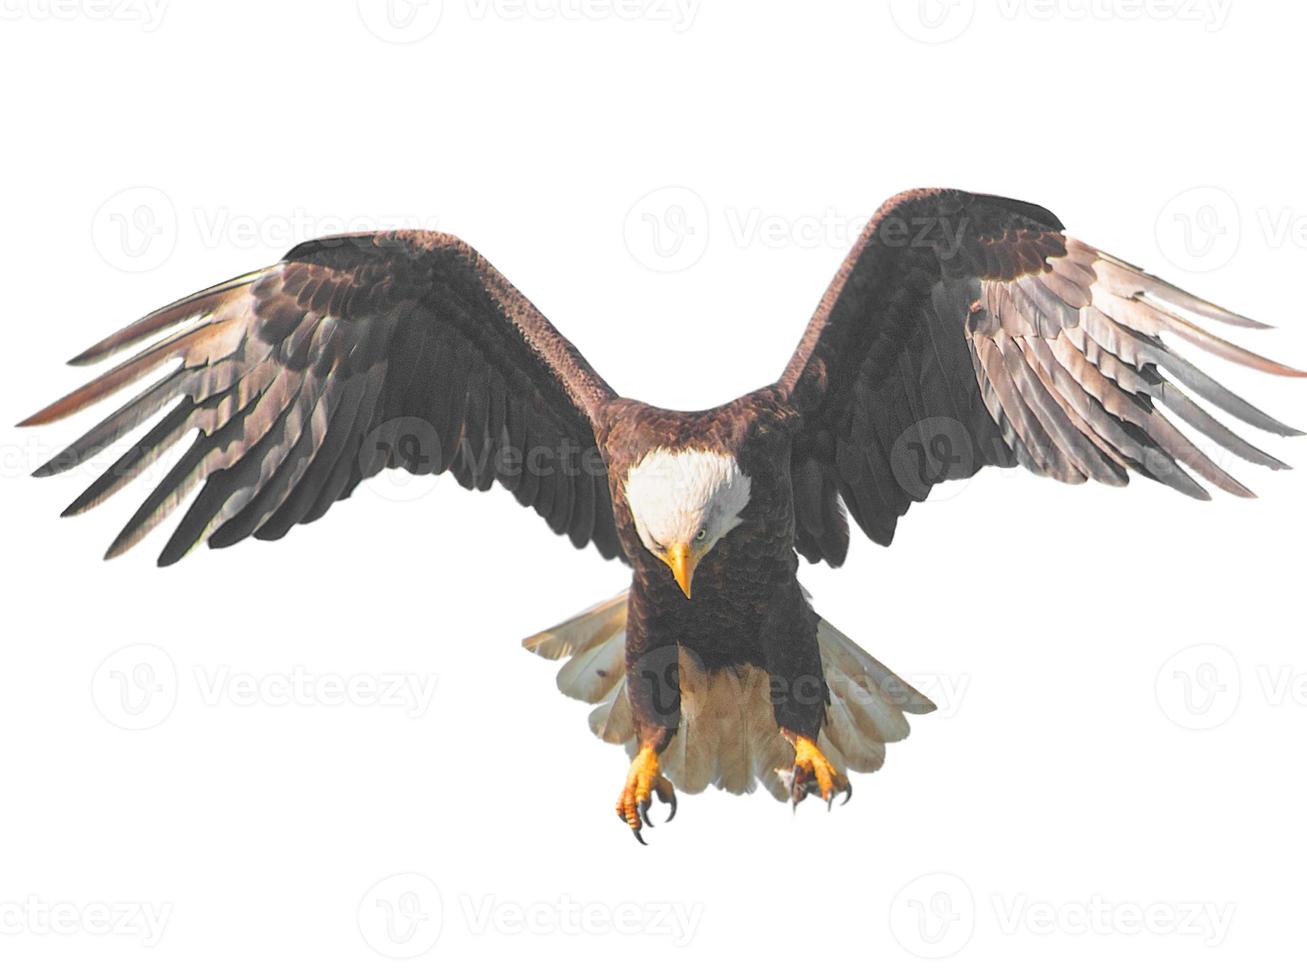 Adler brauner Vogel wenig Lager-Overlay, der in Richtung fliegt, breitet seine Flügel und Federn auf Weiß aus. foto